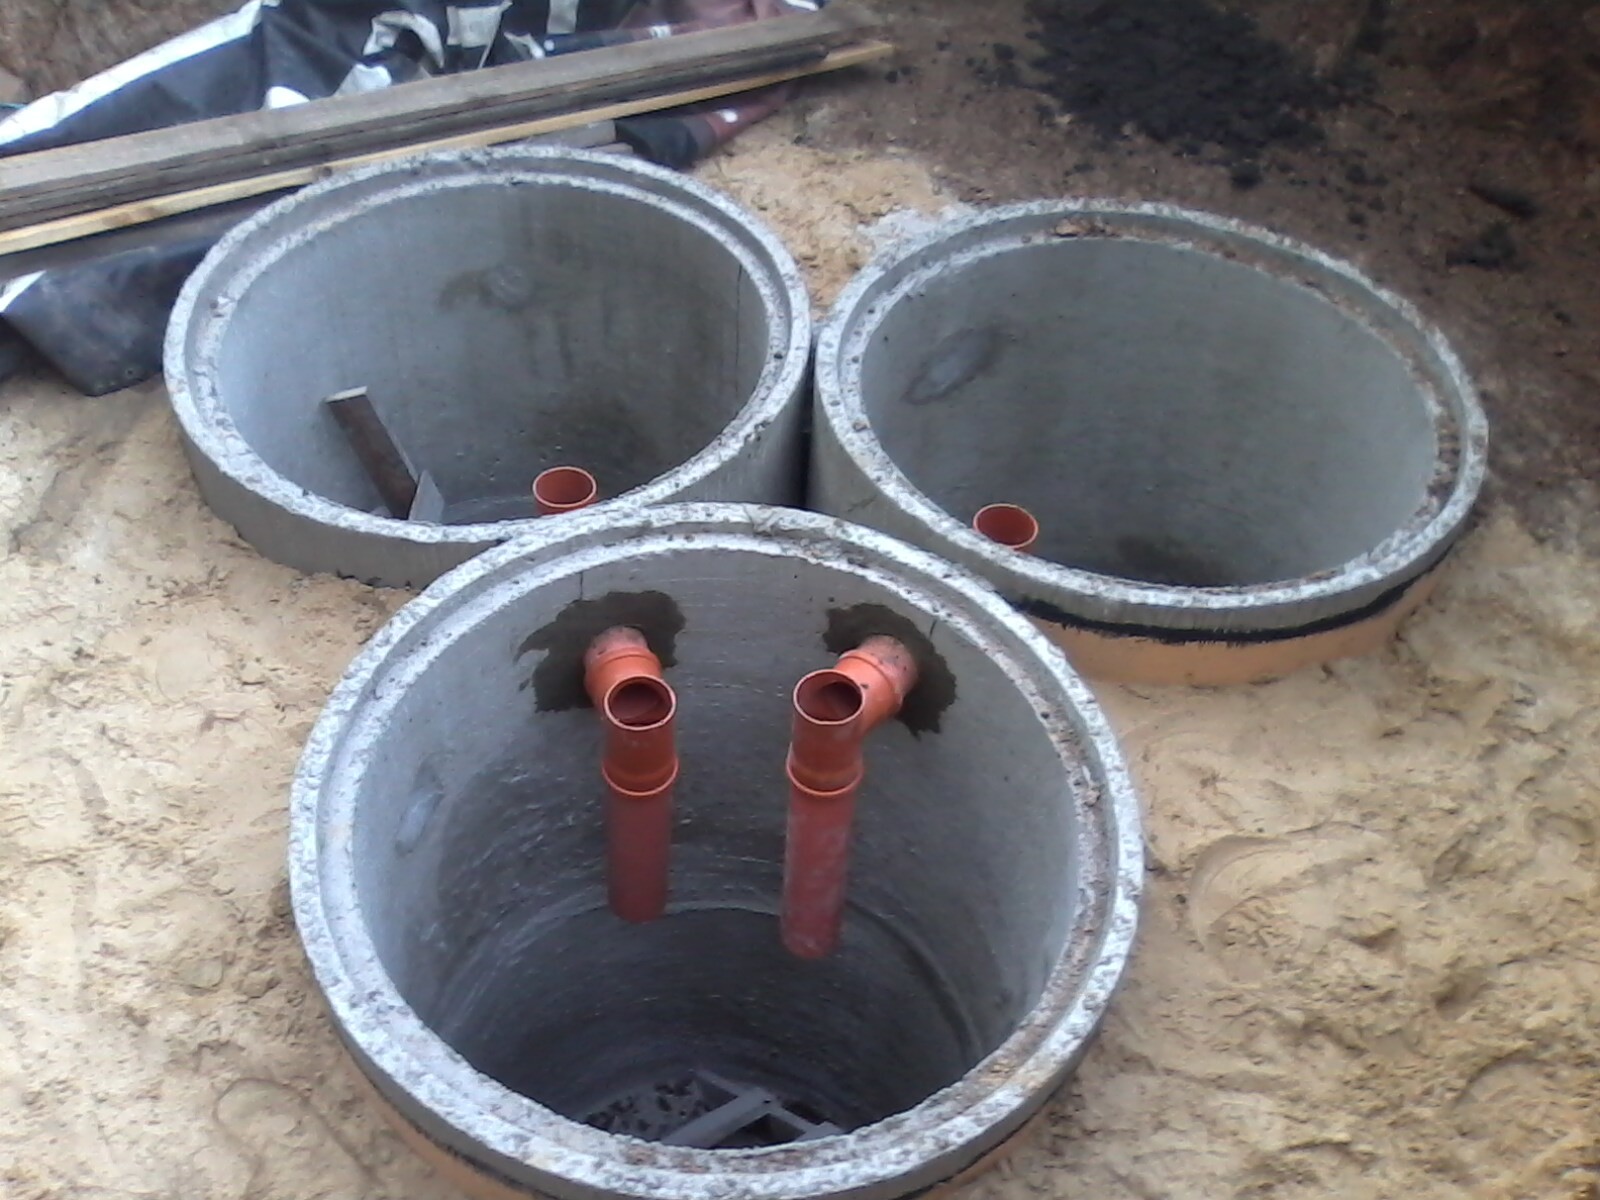 Устройство выгребной ямы из бетонных колец с переливом: Выгребная яма .